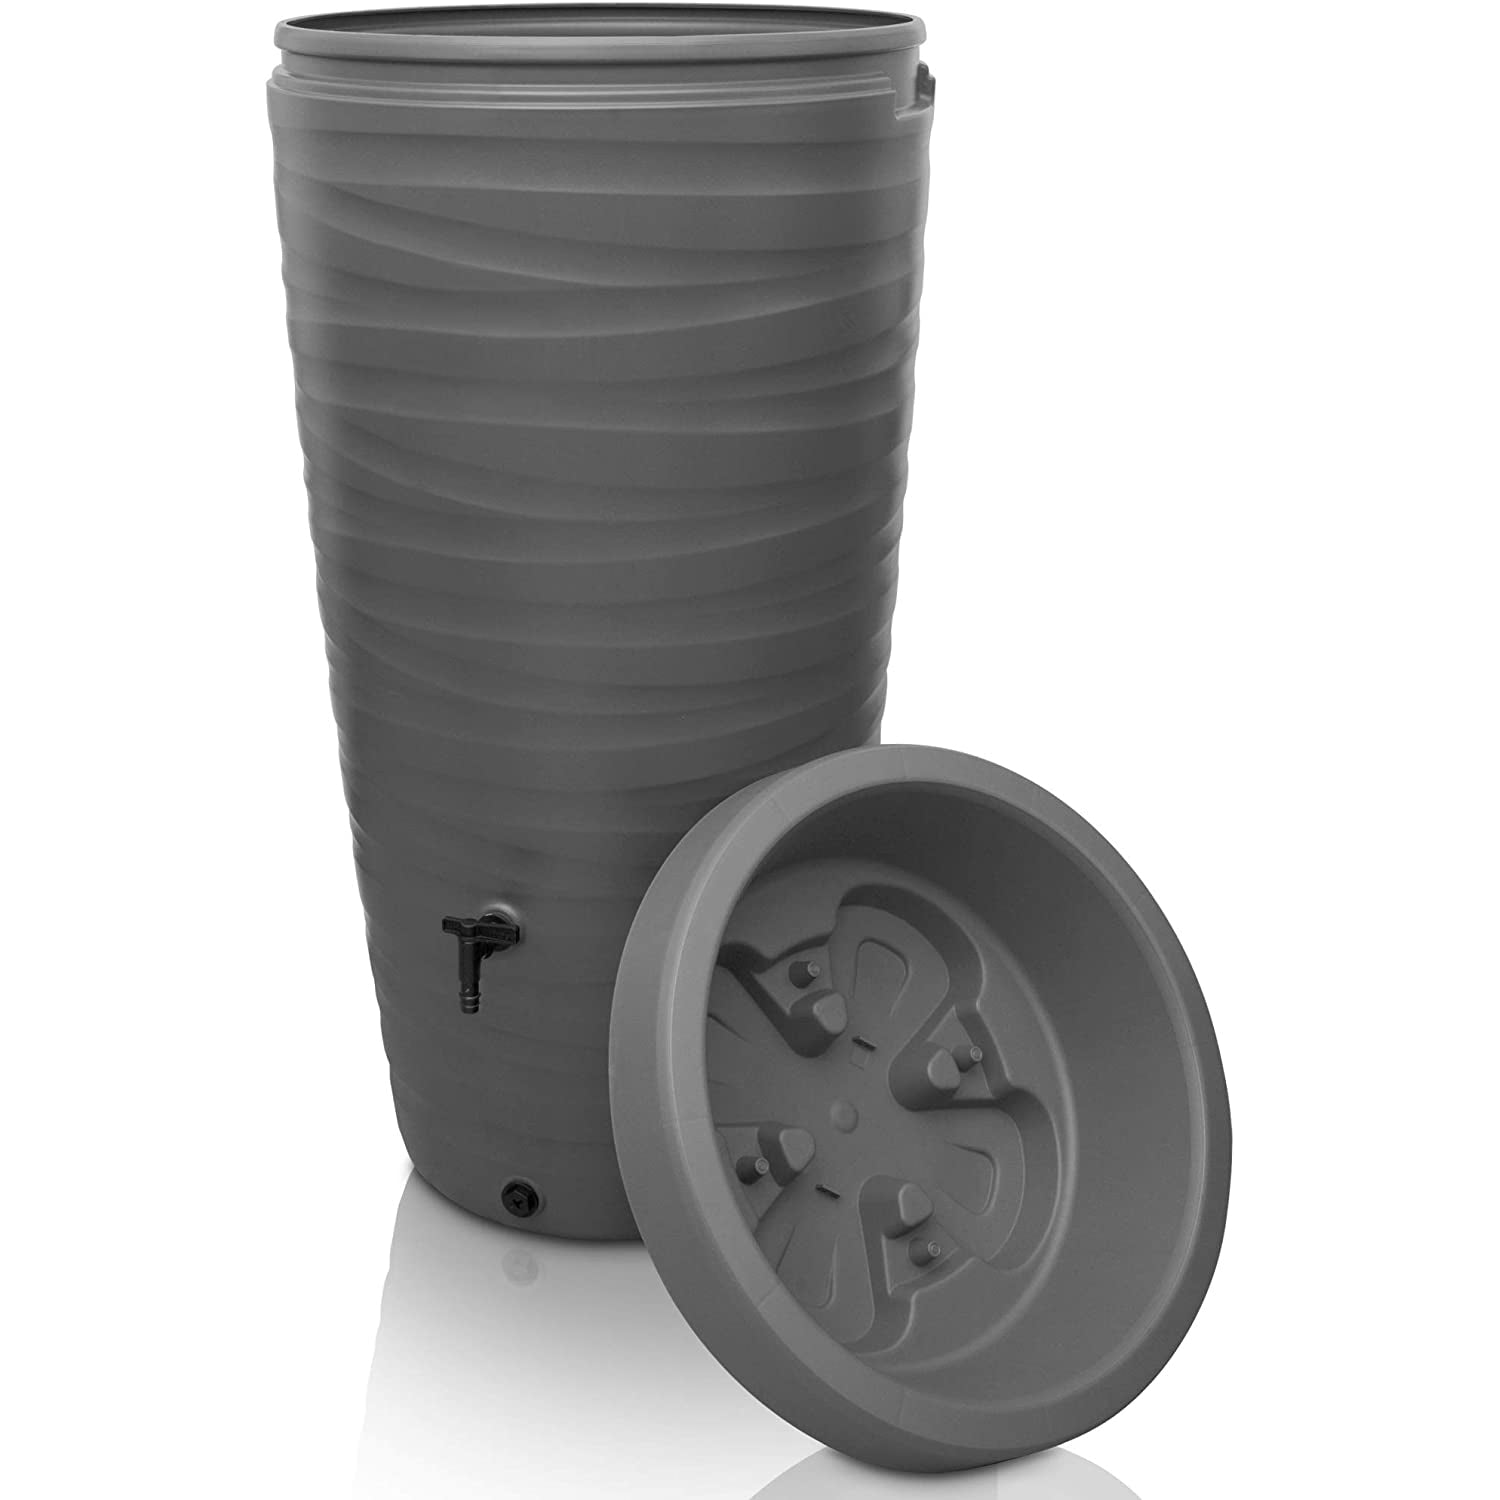 Stapel von YourCasa Regentonnen 240 Liter [Wellendesign] - Frostsicher & UV-beständig mit einem daneben platzierten Deckel, gleichartige Komponenten für ein nachhaltiges Bewässerungssystem.